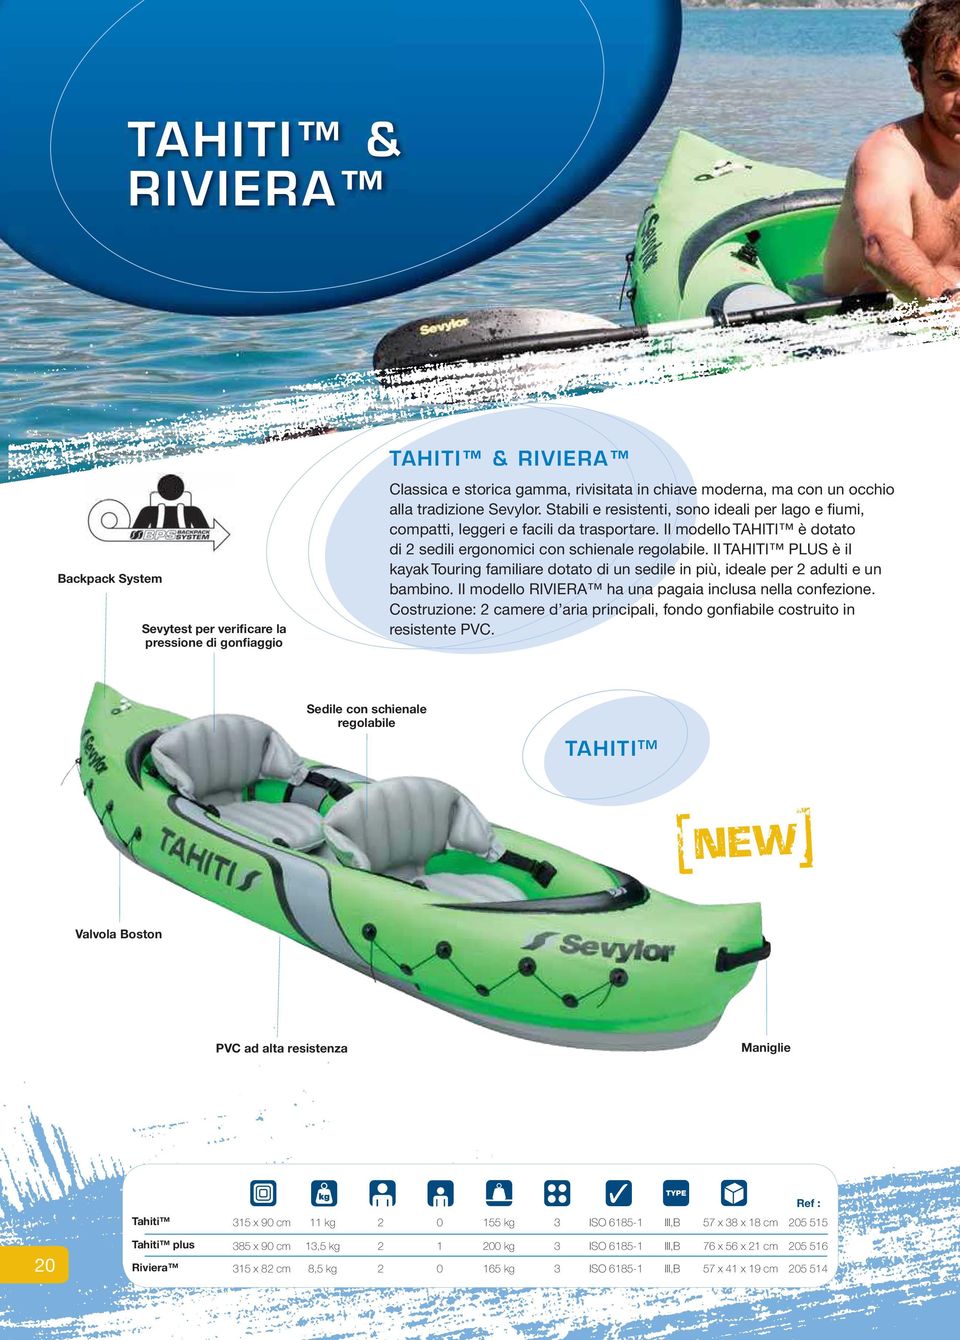 Il TAHITI PLUS è il kayak Touring familiare dotato di un sedile in più, ideale per 2 adulti e un bambino. Il modello RIVIERA ha una pagaia inclusa nella confezione.